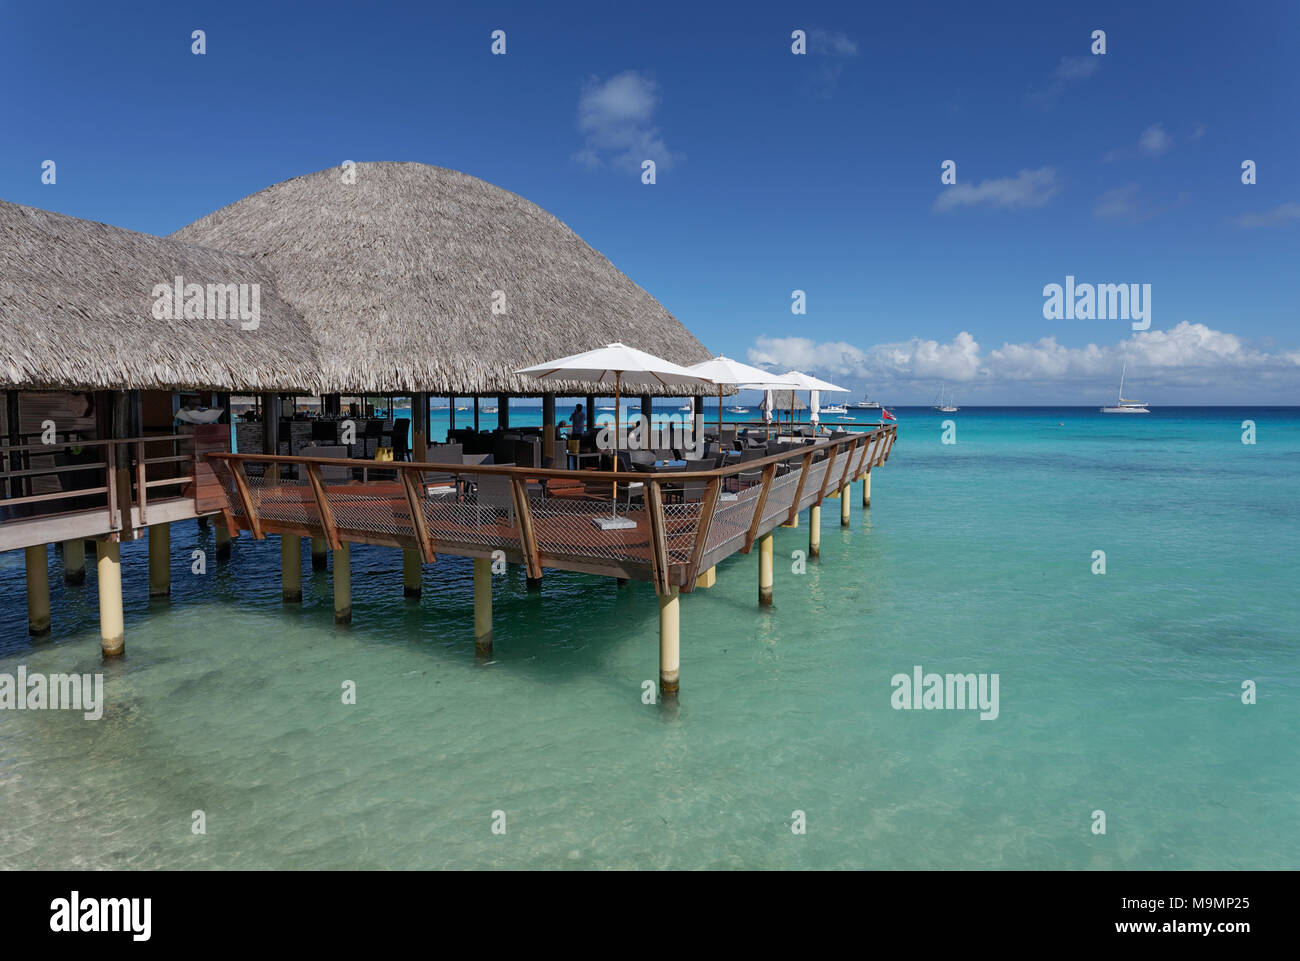 Restaurant auf Stelzen mit Schilf Dach im türkisblauen Meer, Pazifischer Ozean, Hotel KiaOra Resort & Spa, Rangiroa, Gesellschaft Inseln Stockfoto